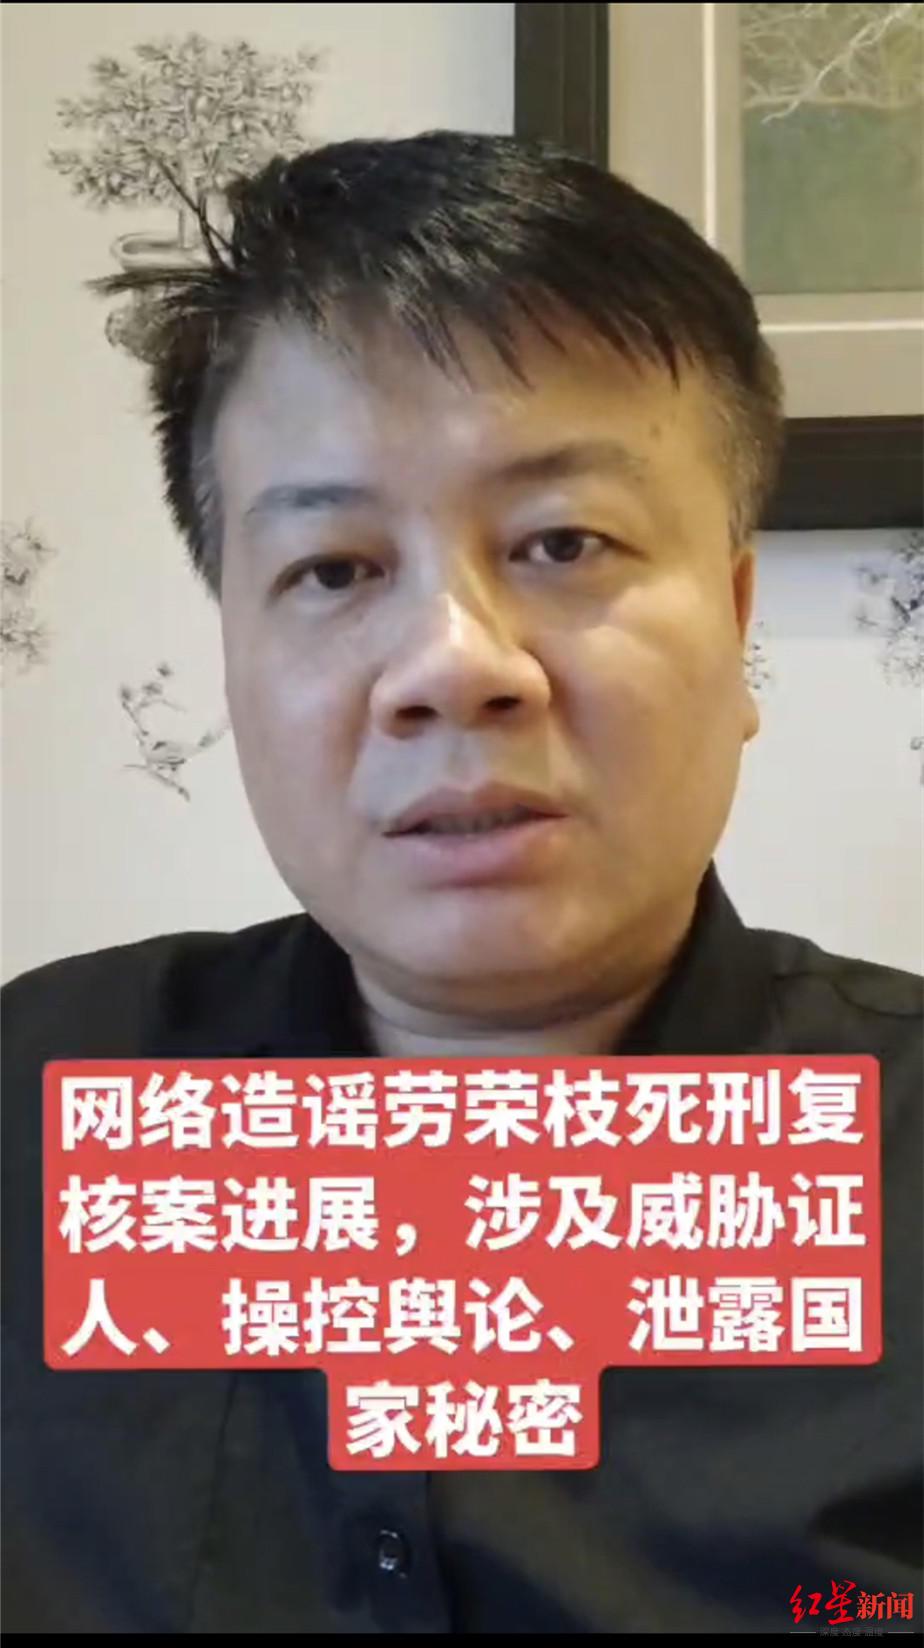 劳荣枝律师称被厦门网友辱骂自诉维权 网友反告劳荣枝律师侵权 法院均立案